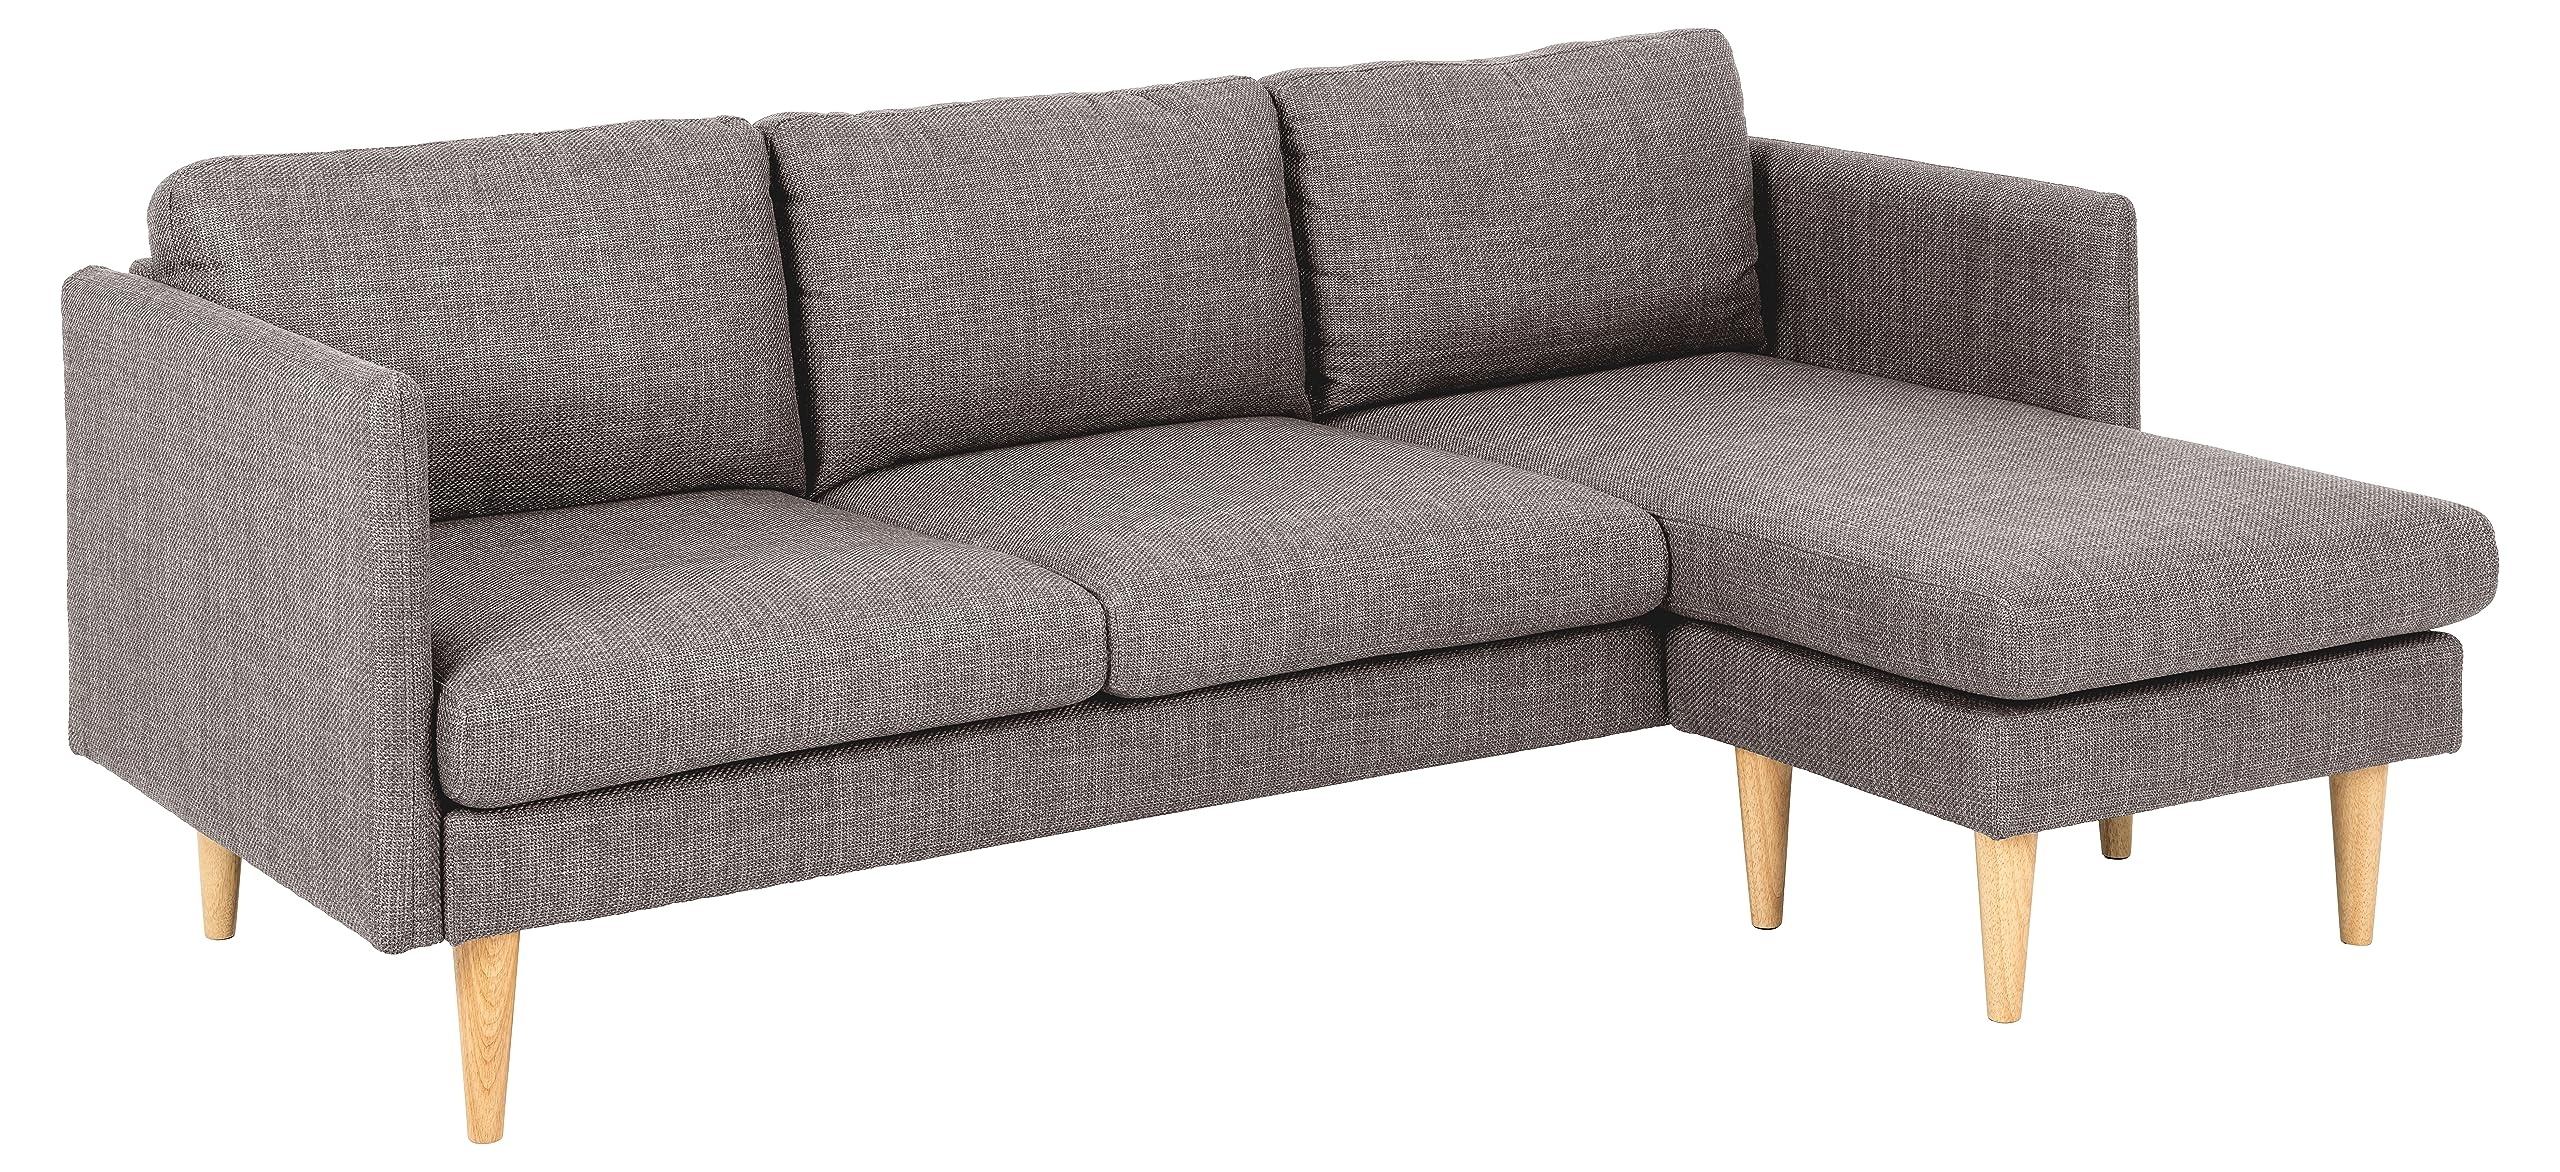 AC Design Furniture Milla 2-Sitzer Sofa mit Chaise Longue Modul in Hellgrau-braun, Kleines Ecksofa für 2 Personen, Couch mit Armlehnen in L-Form, Sofa im Retro Stil, B: 201 x H: 84 x T: 132 cm